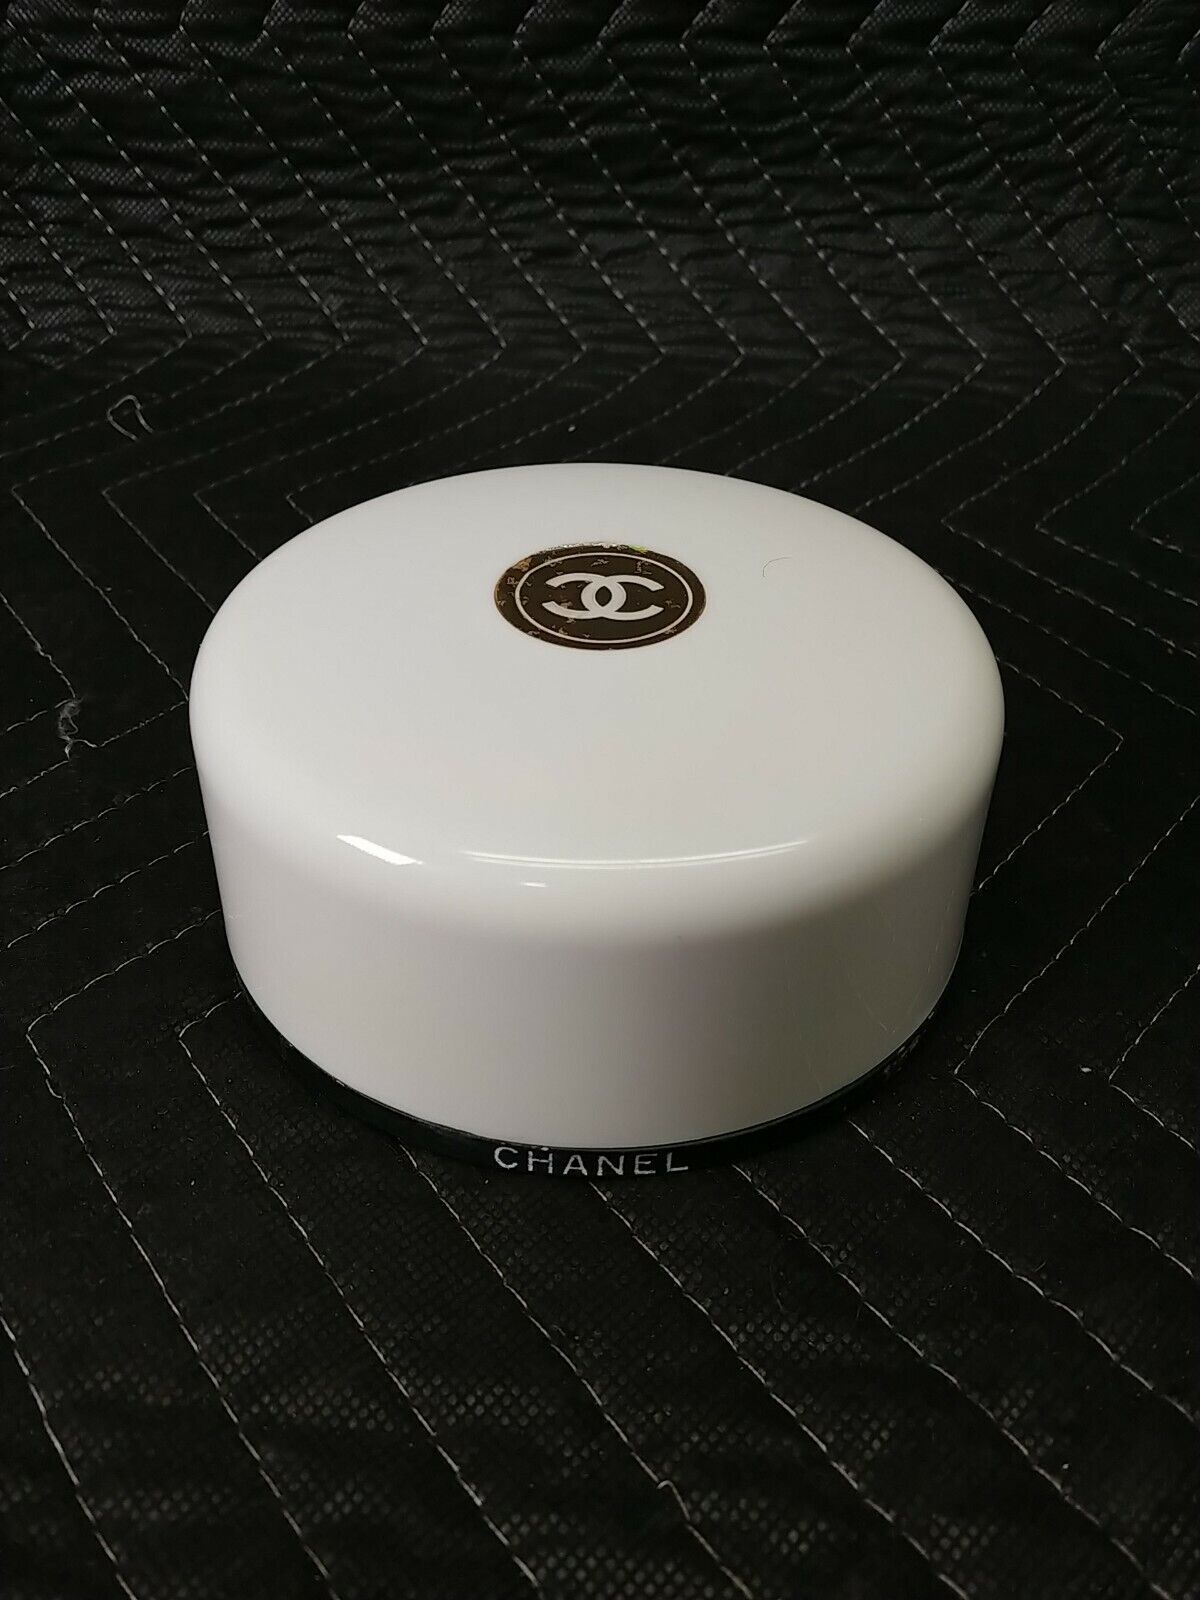 Vintage Chanel Bath Powder Fragranced No. 5 Size 730 90% Full Disconti –  ineedths